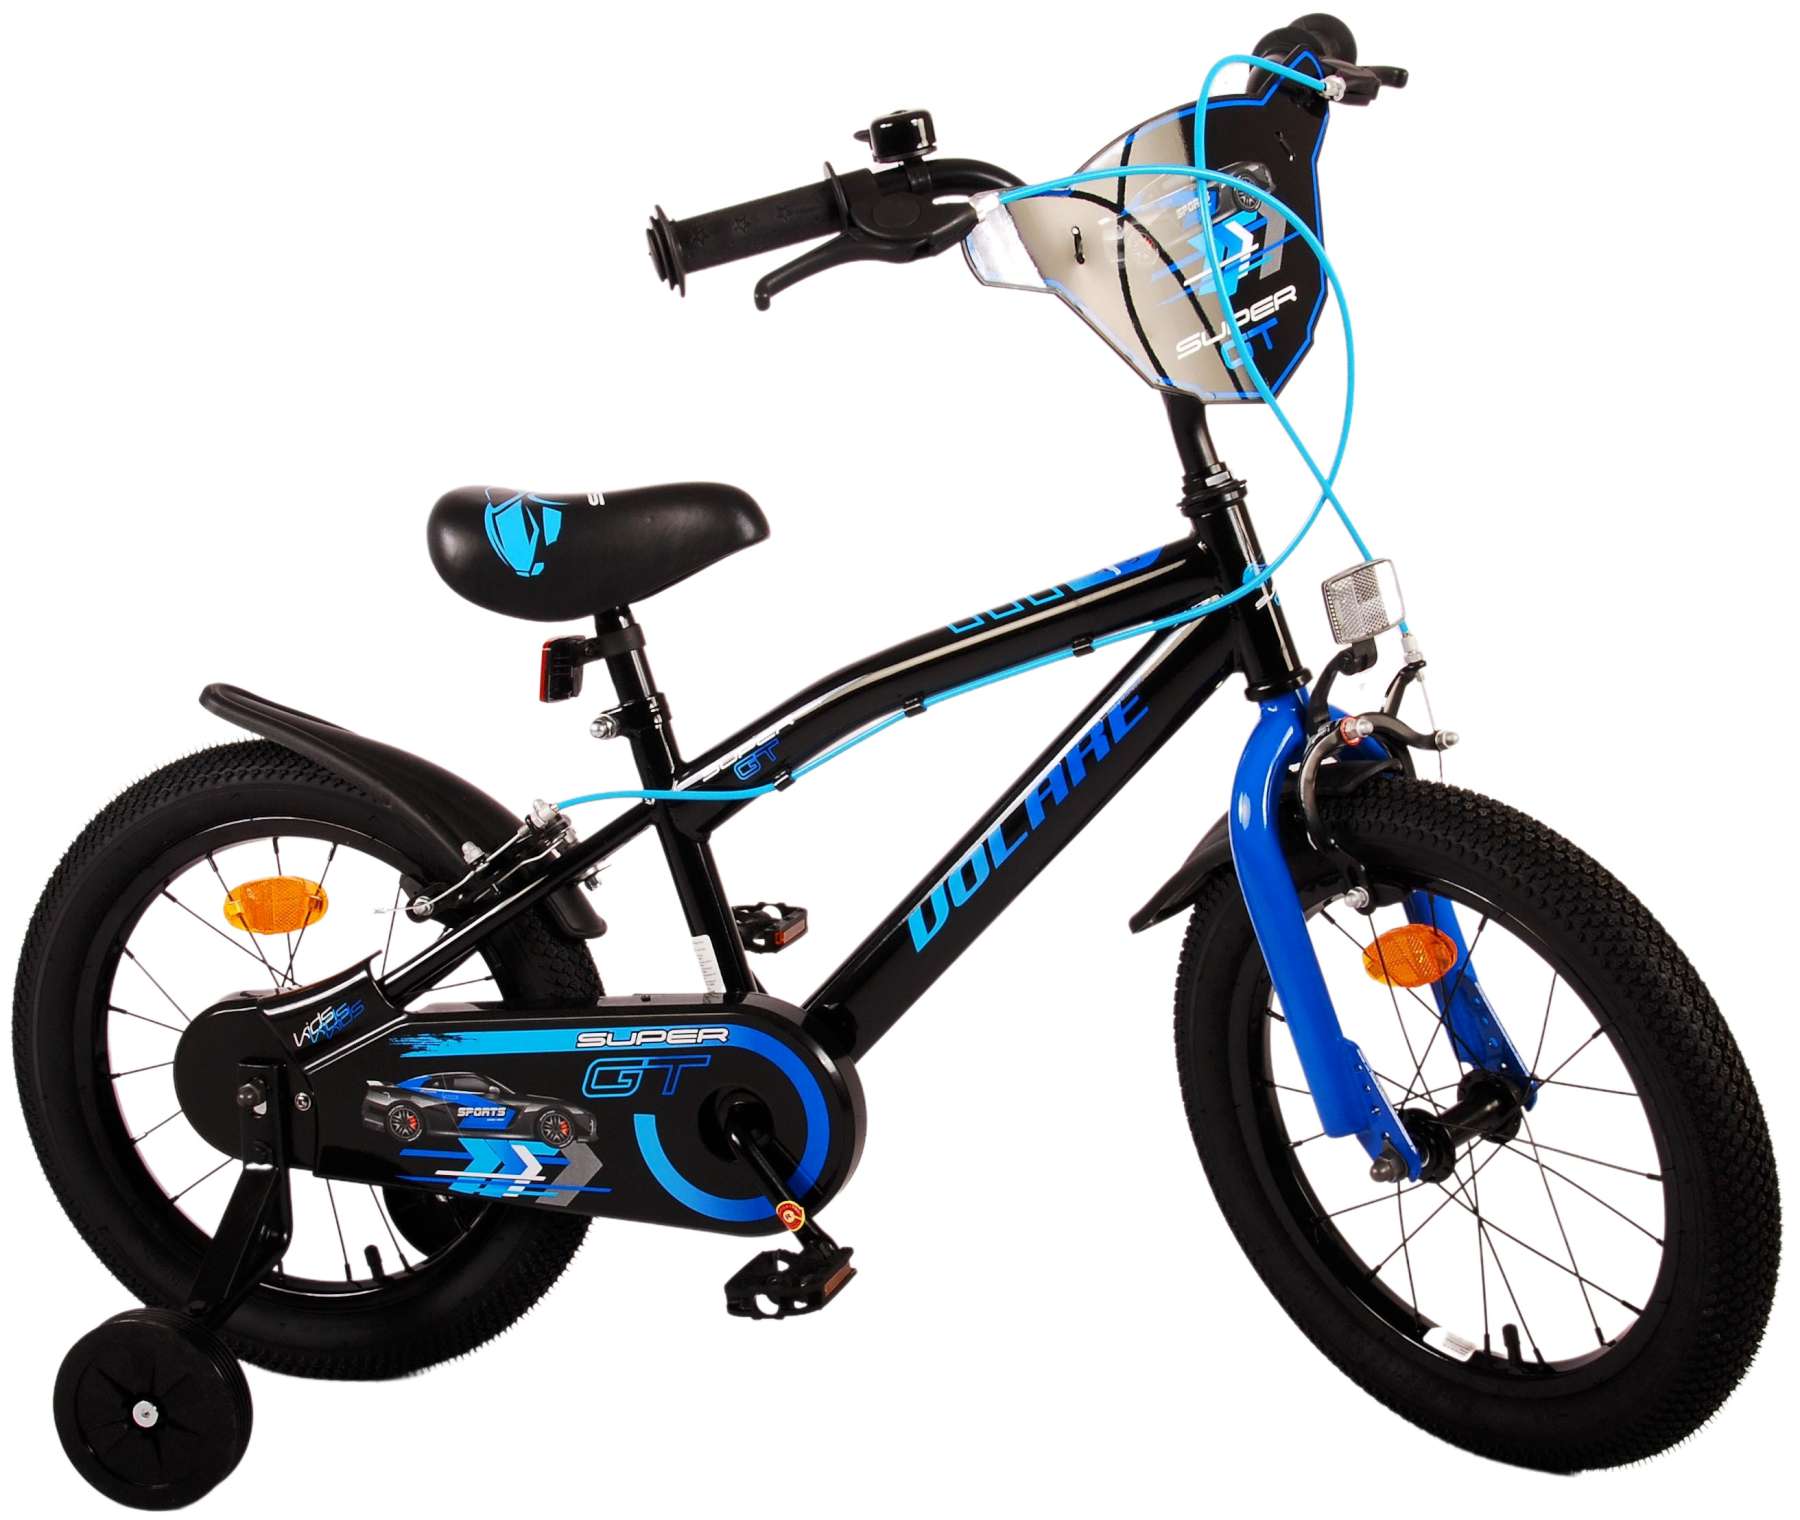 Kinderfahrrad Super GT Fahrrad für Jungen 16 Zoll Kinderrad in Blau